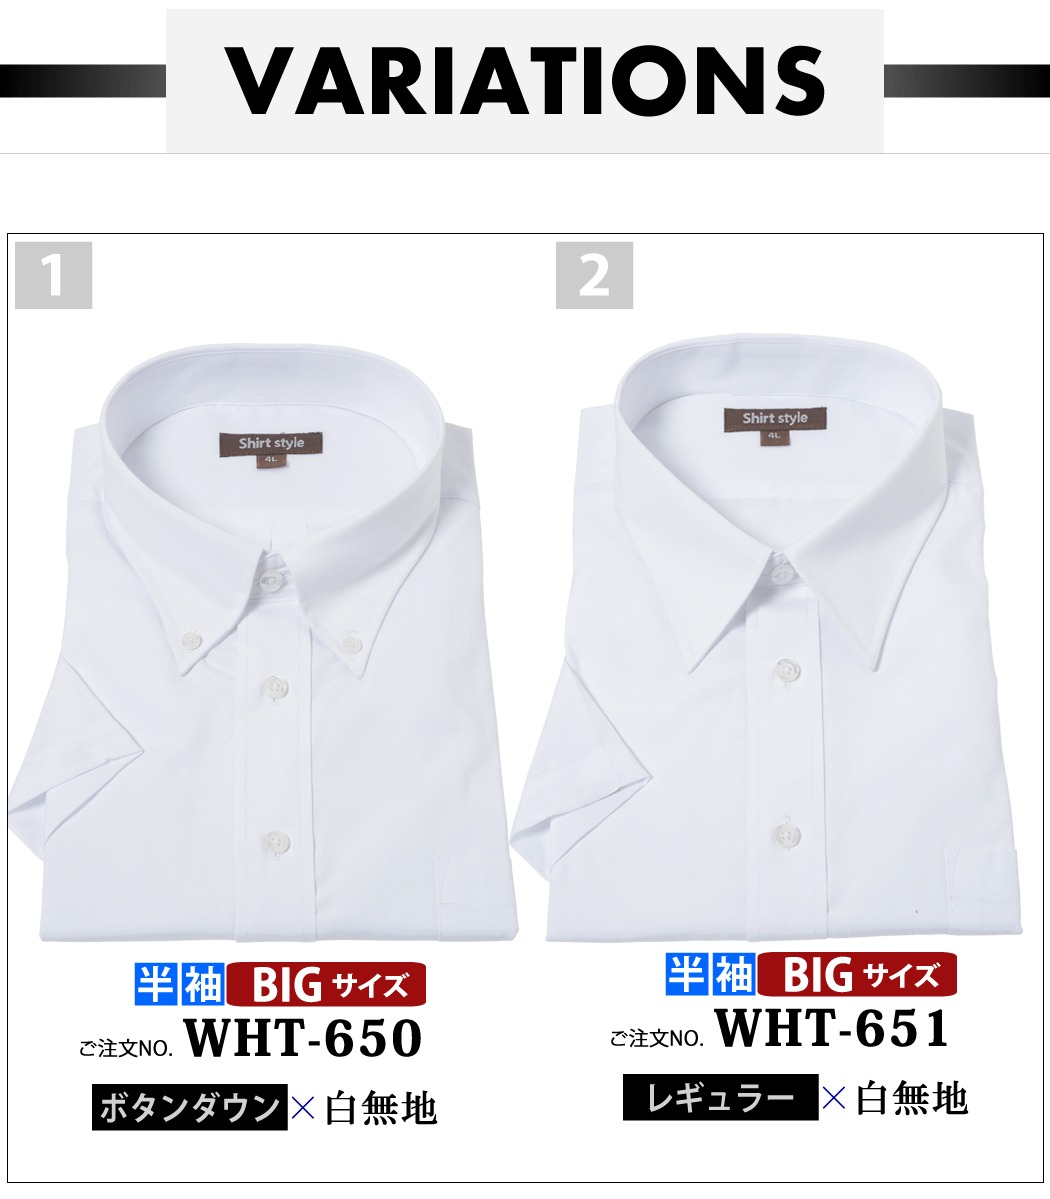 ワイシャツ 大きいサイズ 半袖 メンズ 3l 4l 5l 6l 7l 8l 大きいサイズ ボタンダウン レギュラーカラー 白 白無地